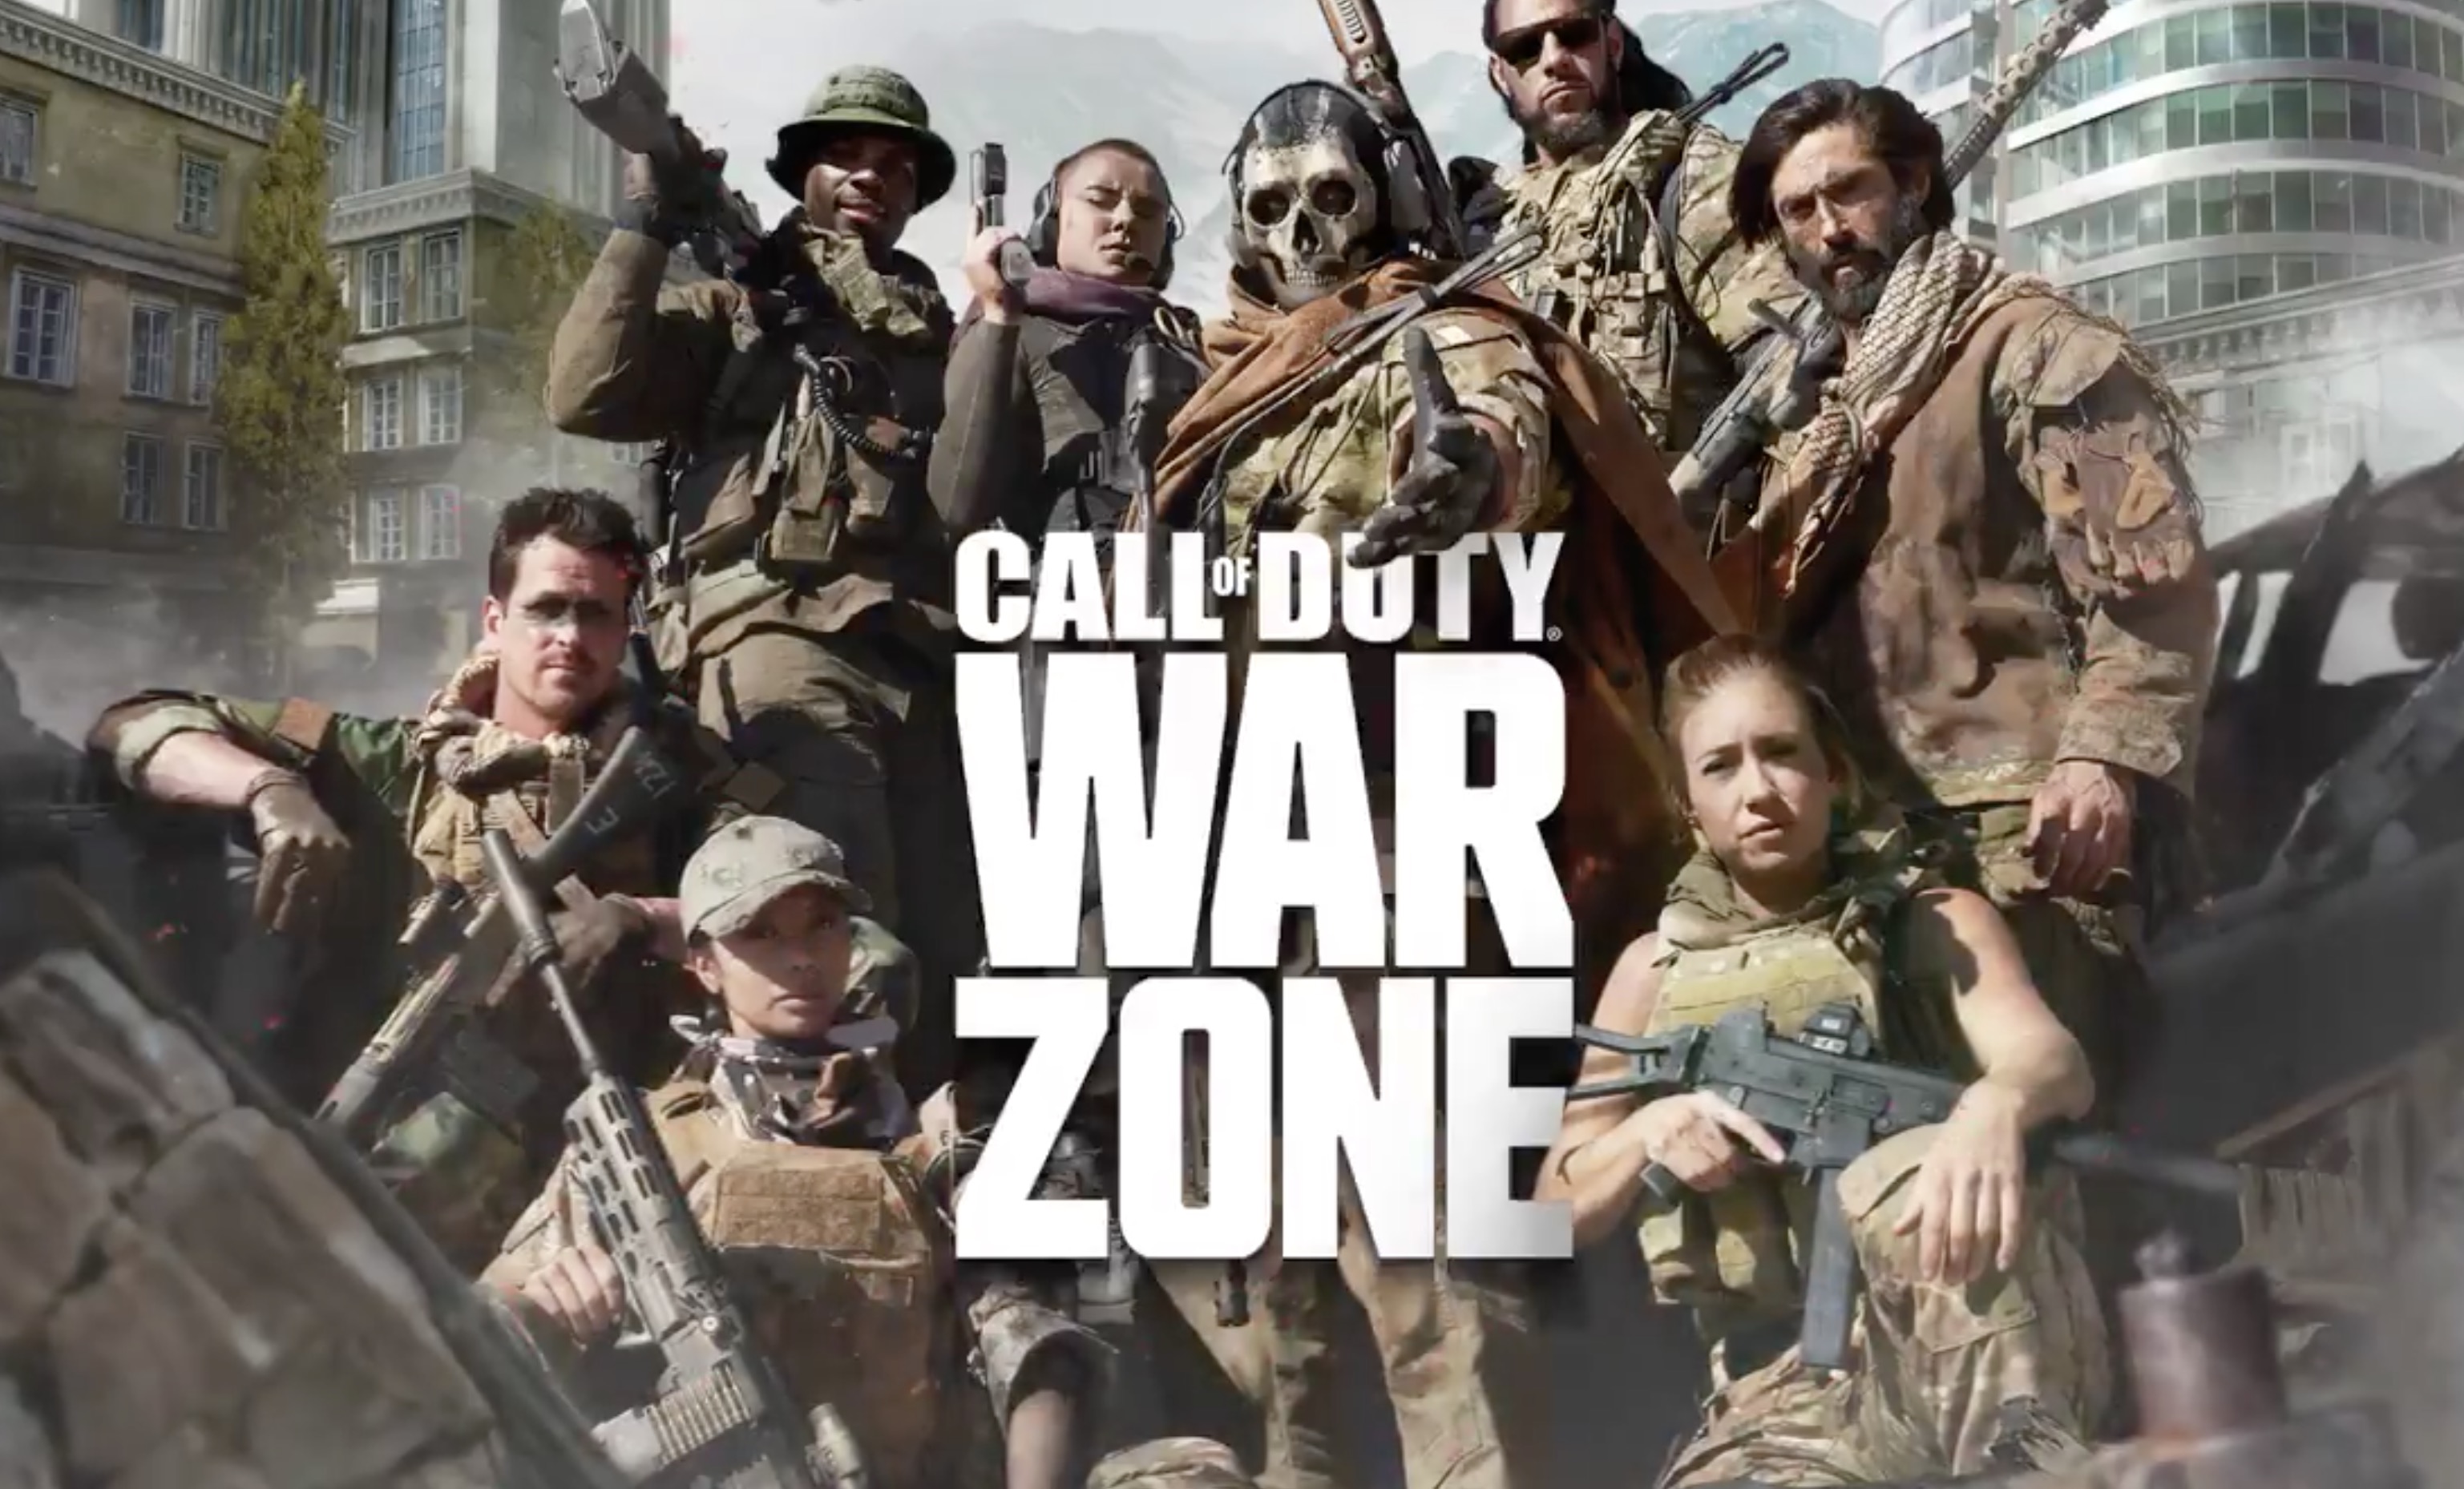 Call of duty warzone play. Call of Duty Warzone. Call of Duty Modern Warfare Warzone. Warzone Call of Duty Art. Call of Duty Warzone 2.